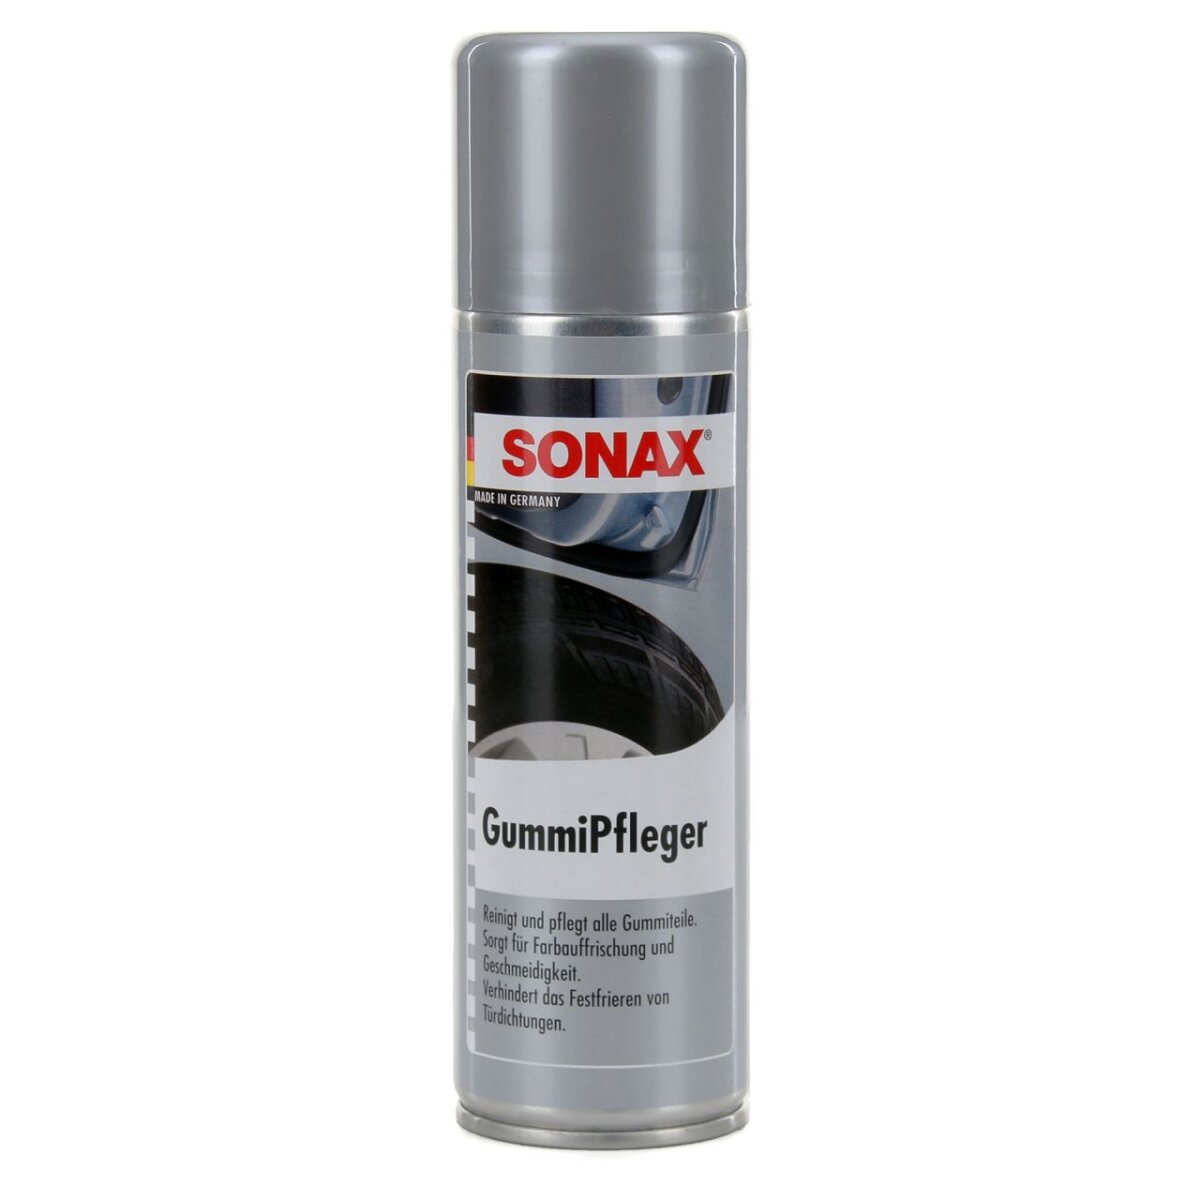 SONAX - GummiPfleger - 300ml, 10,99 €